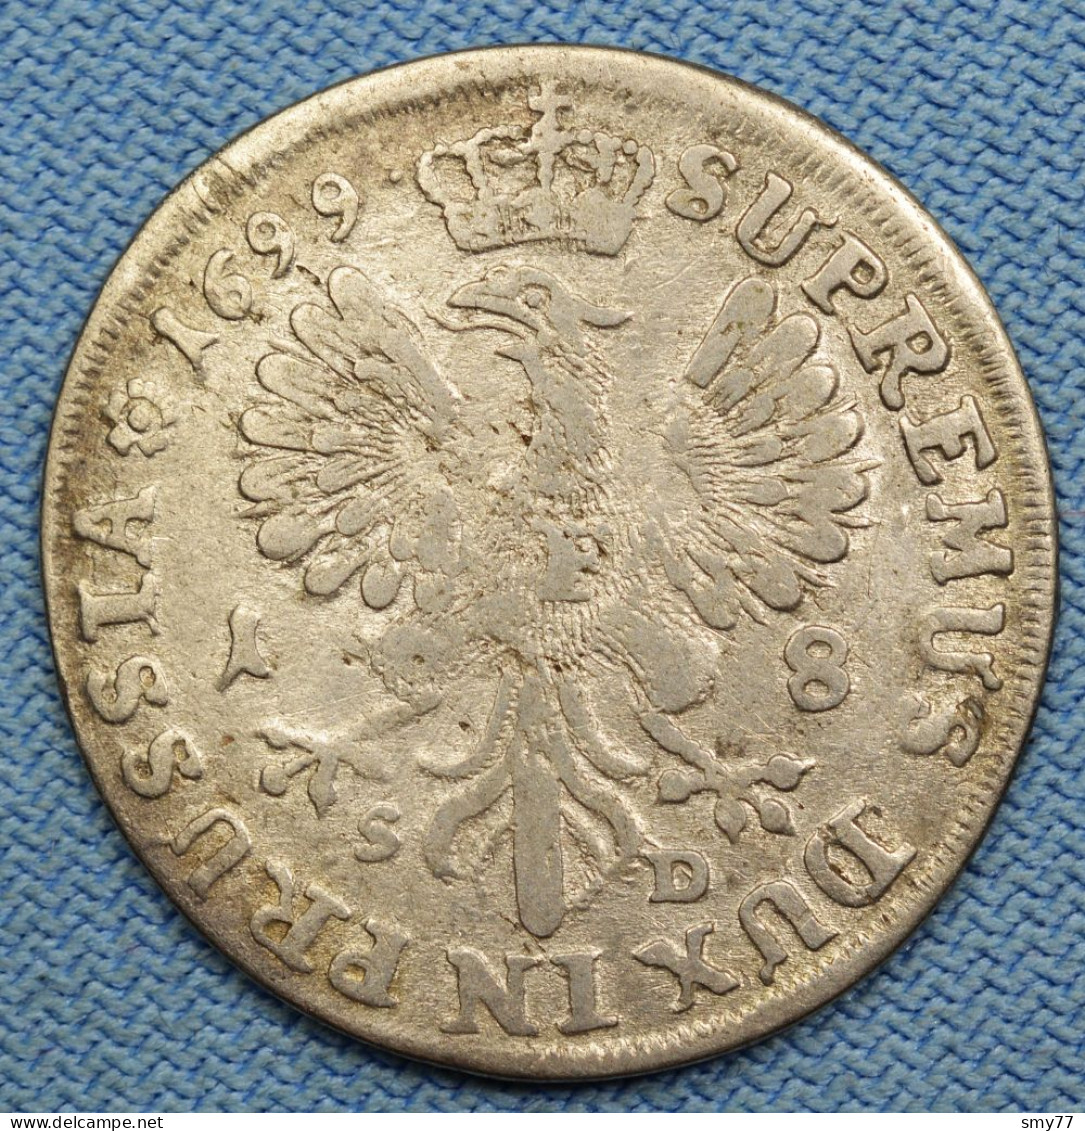 Preussen / Prussia • 18 Gröscher 1699 SD • Friedrich III • Brandenburg / Prusse / German States / Silver • [24-724] - Small Coins & Other Subdivisions